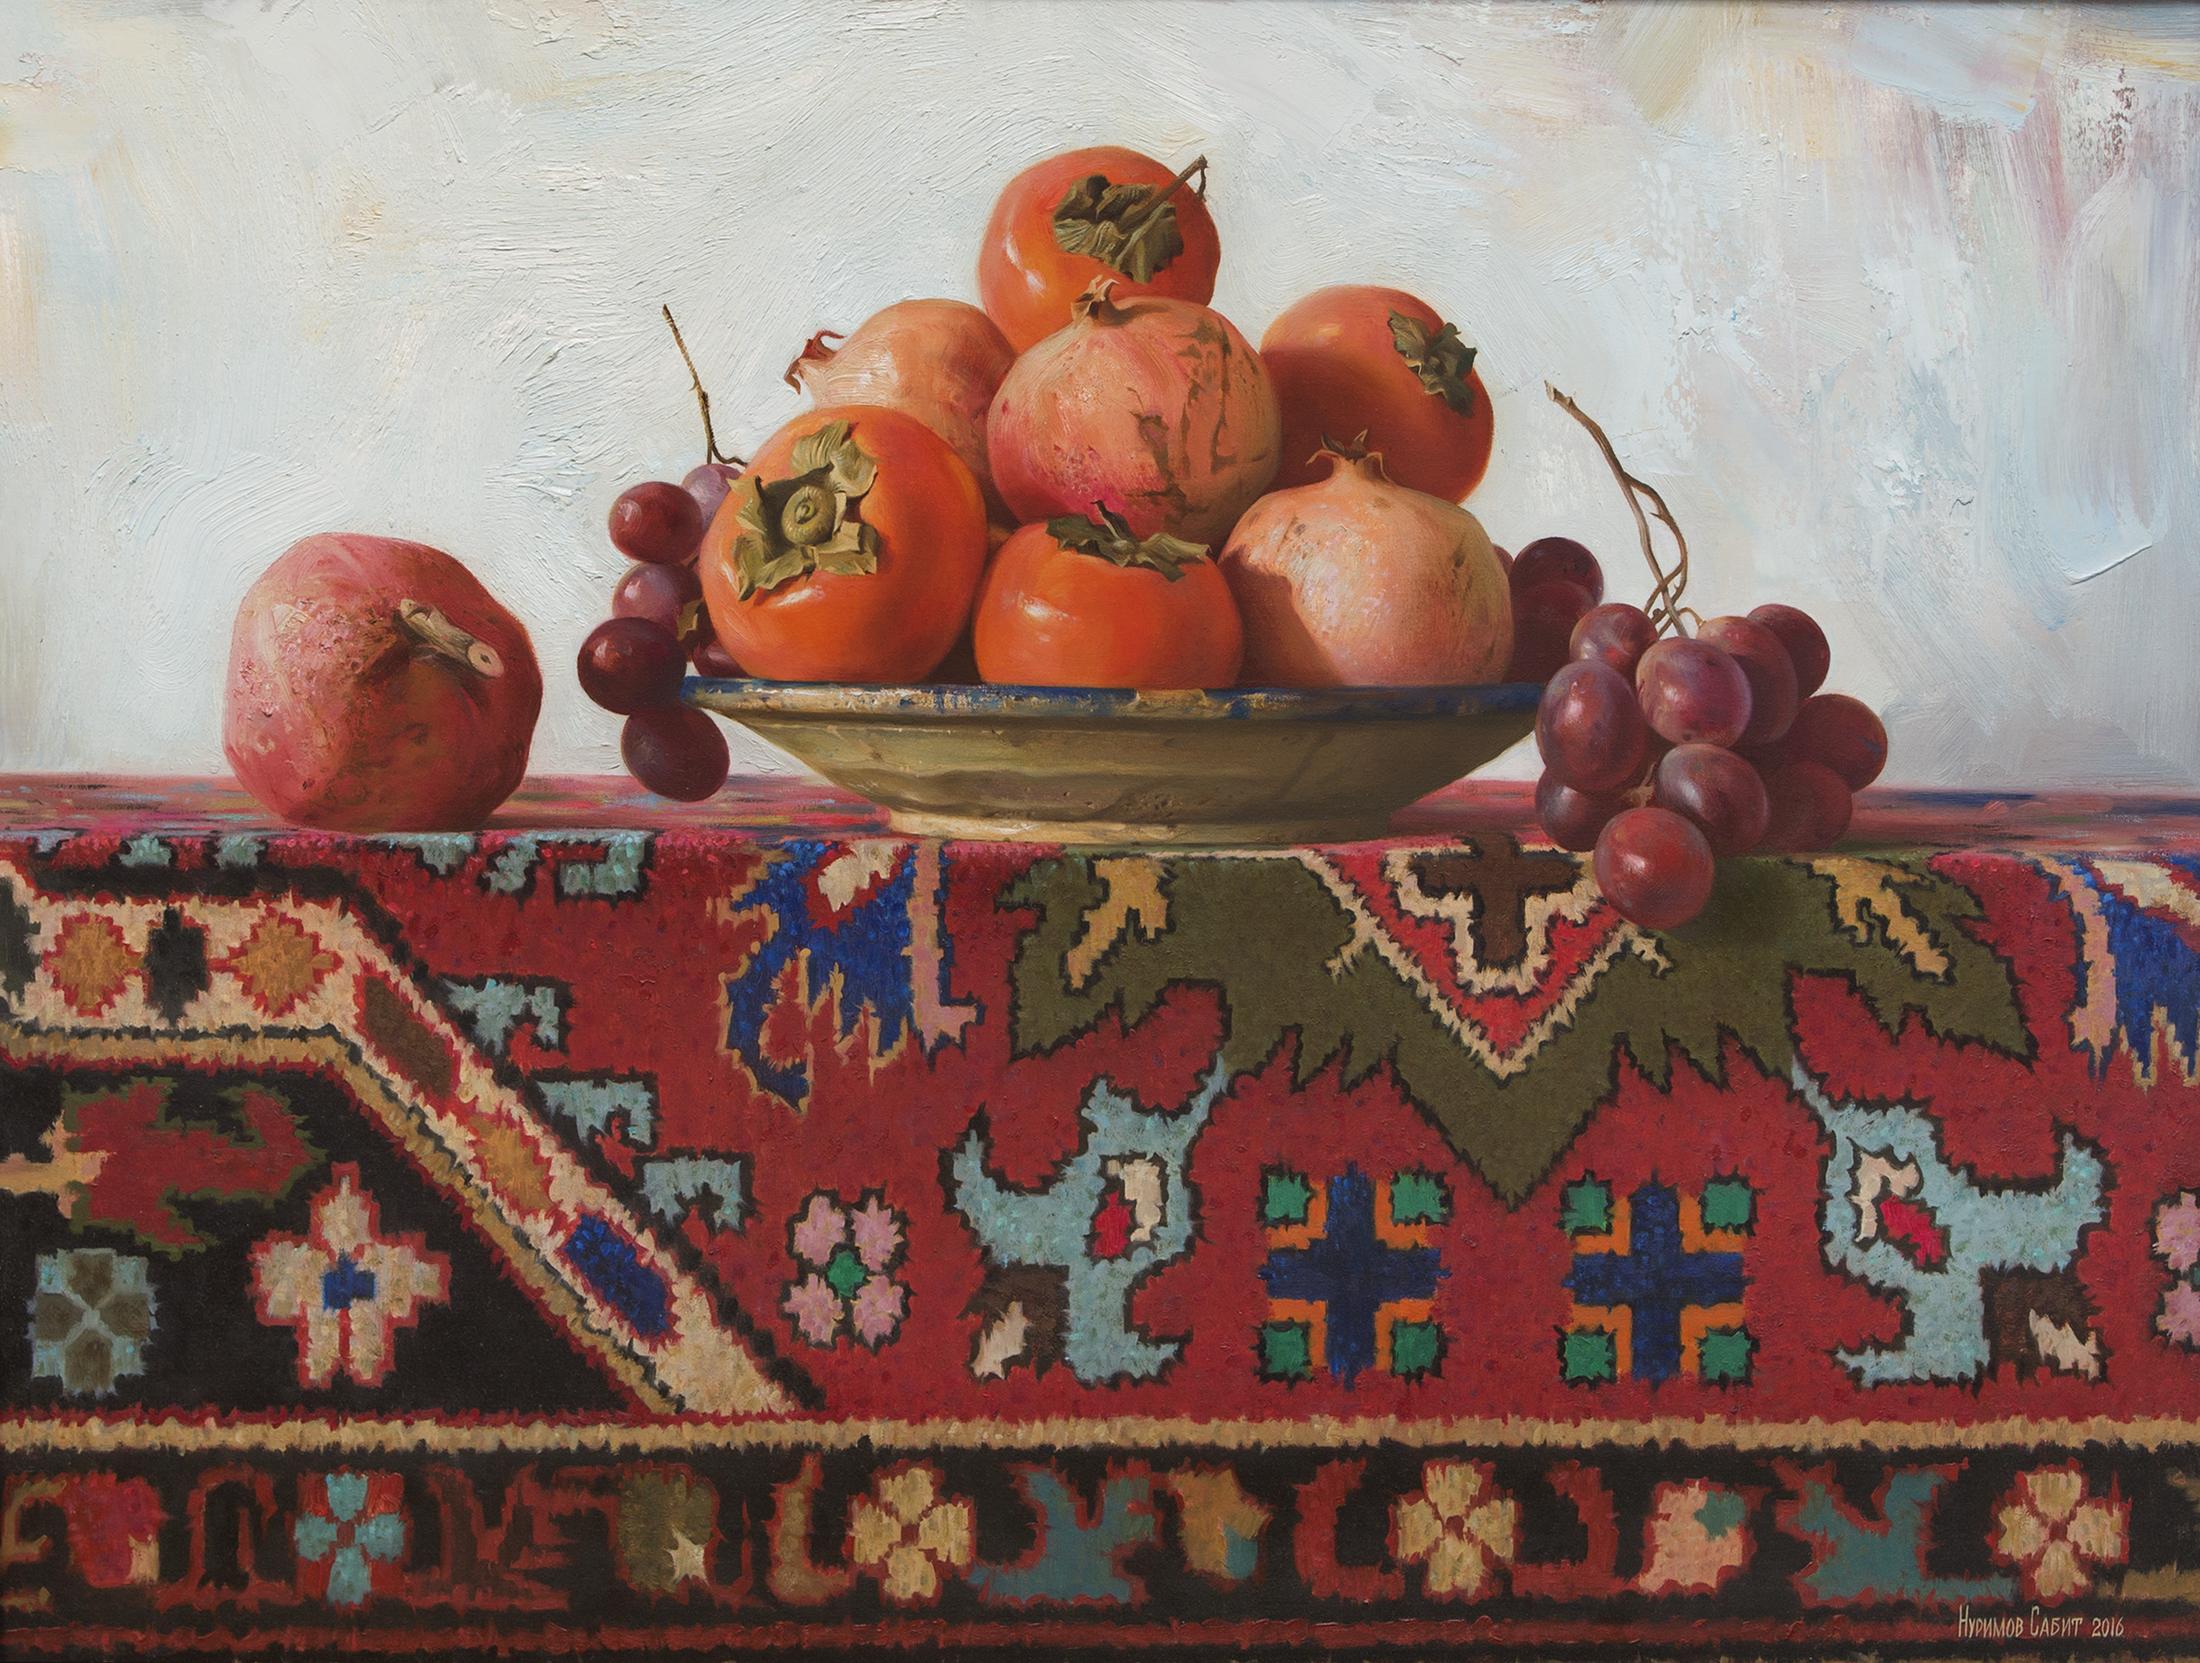 地毯上的柿子和石榴. Original modern art painting